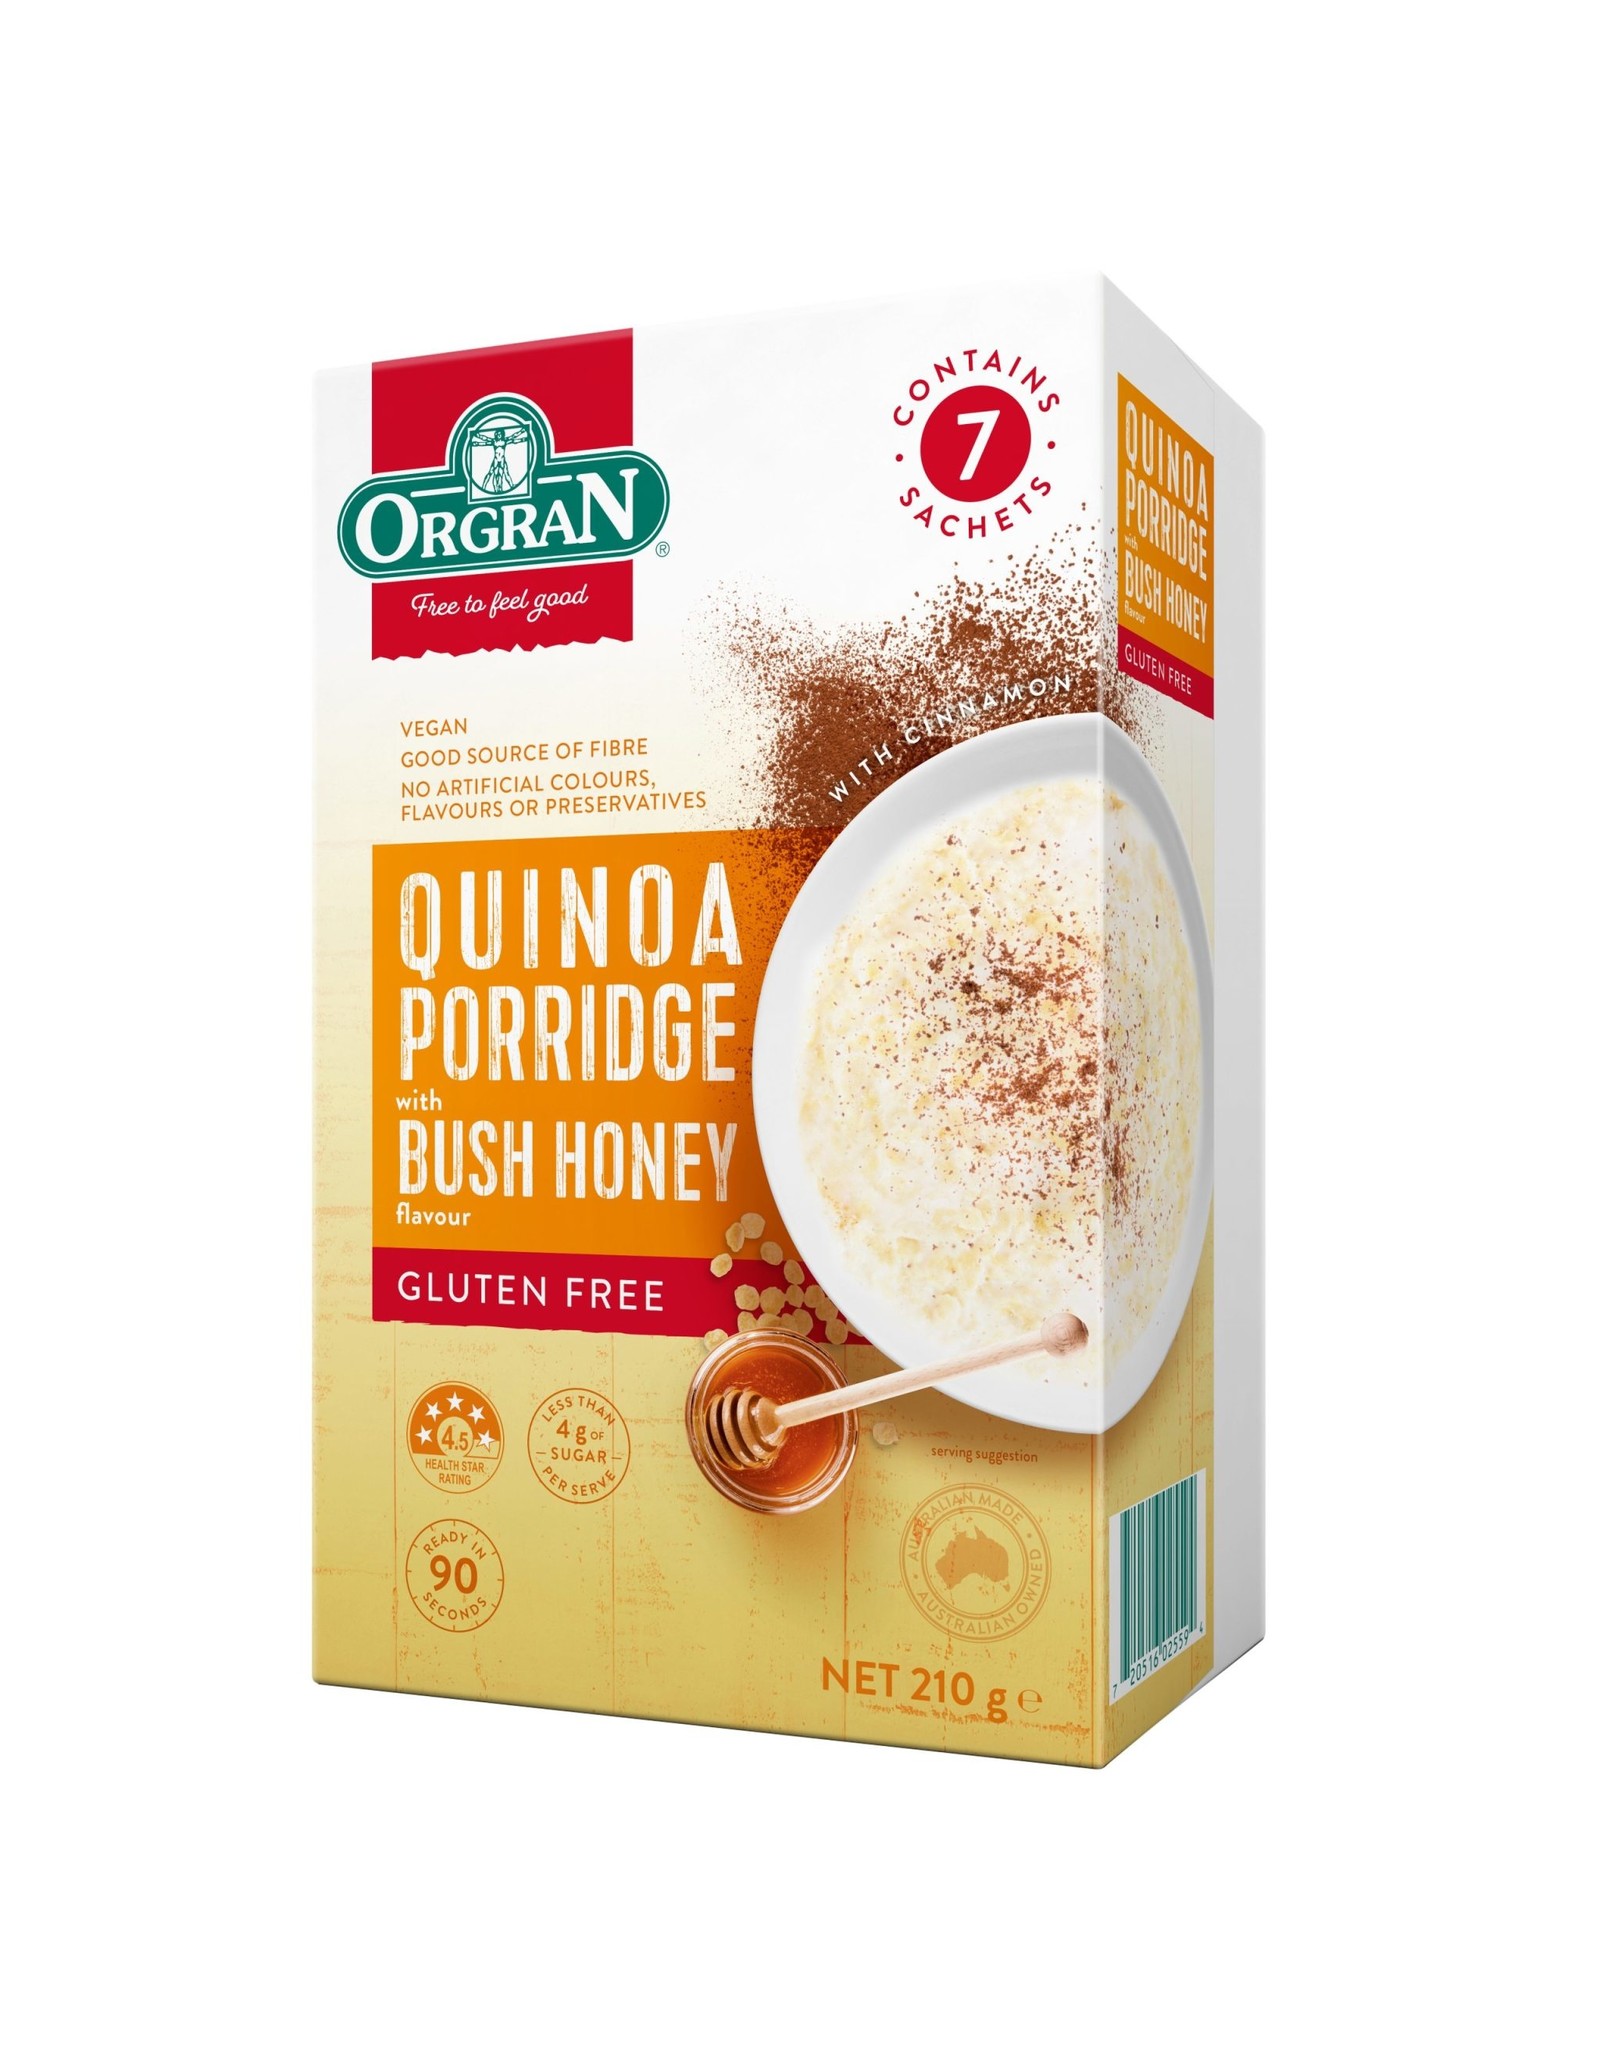 Orgran Quinoa Porridge with Bush Honey Gluten Free 7 x 30g